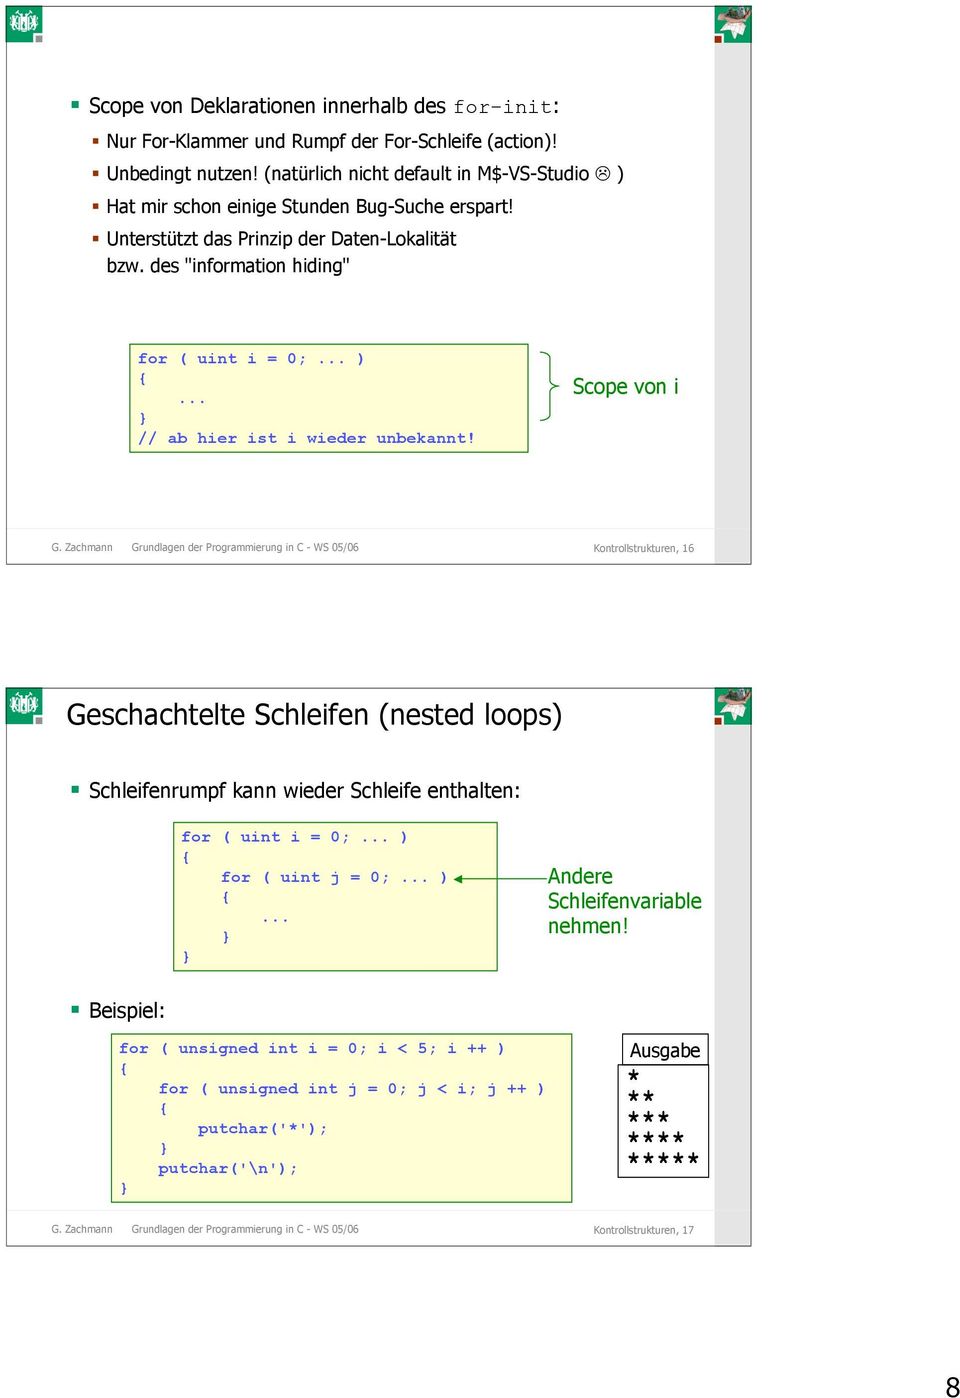 Scope von i G. Zachmann Grundlagen der Programmierung in C - WS 05/06 Kontrollstrukturen, 16 Geschachtelte Schleifen (nested loops) Schleifenrumpf kann wieder Schleife enthalten: for ( uint i = 0;.